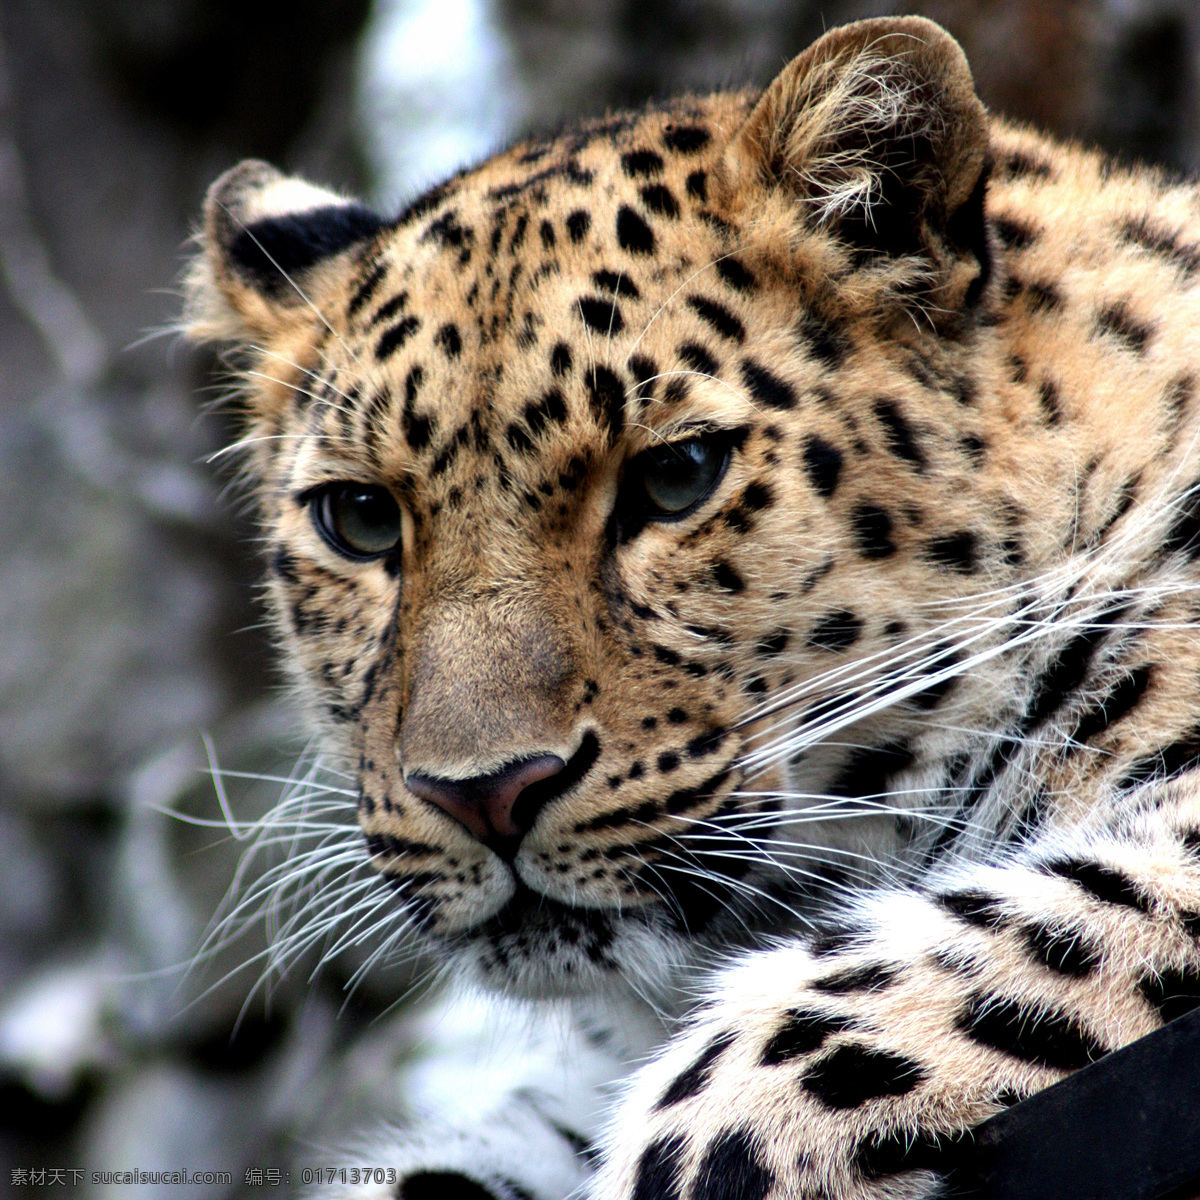 豹子图片 豹子 豹 豹猫动物 野生猫科 濒危保护 舌头 牙齿 眼睛 自然 动物 野生动物 生物世界